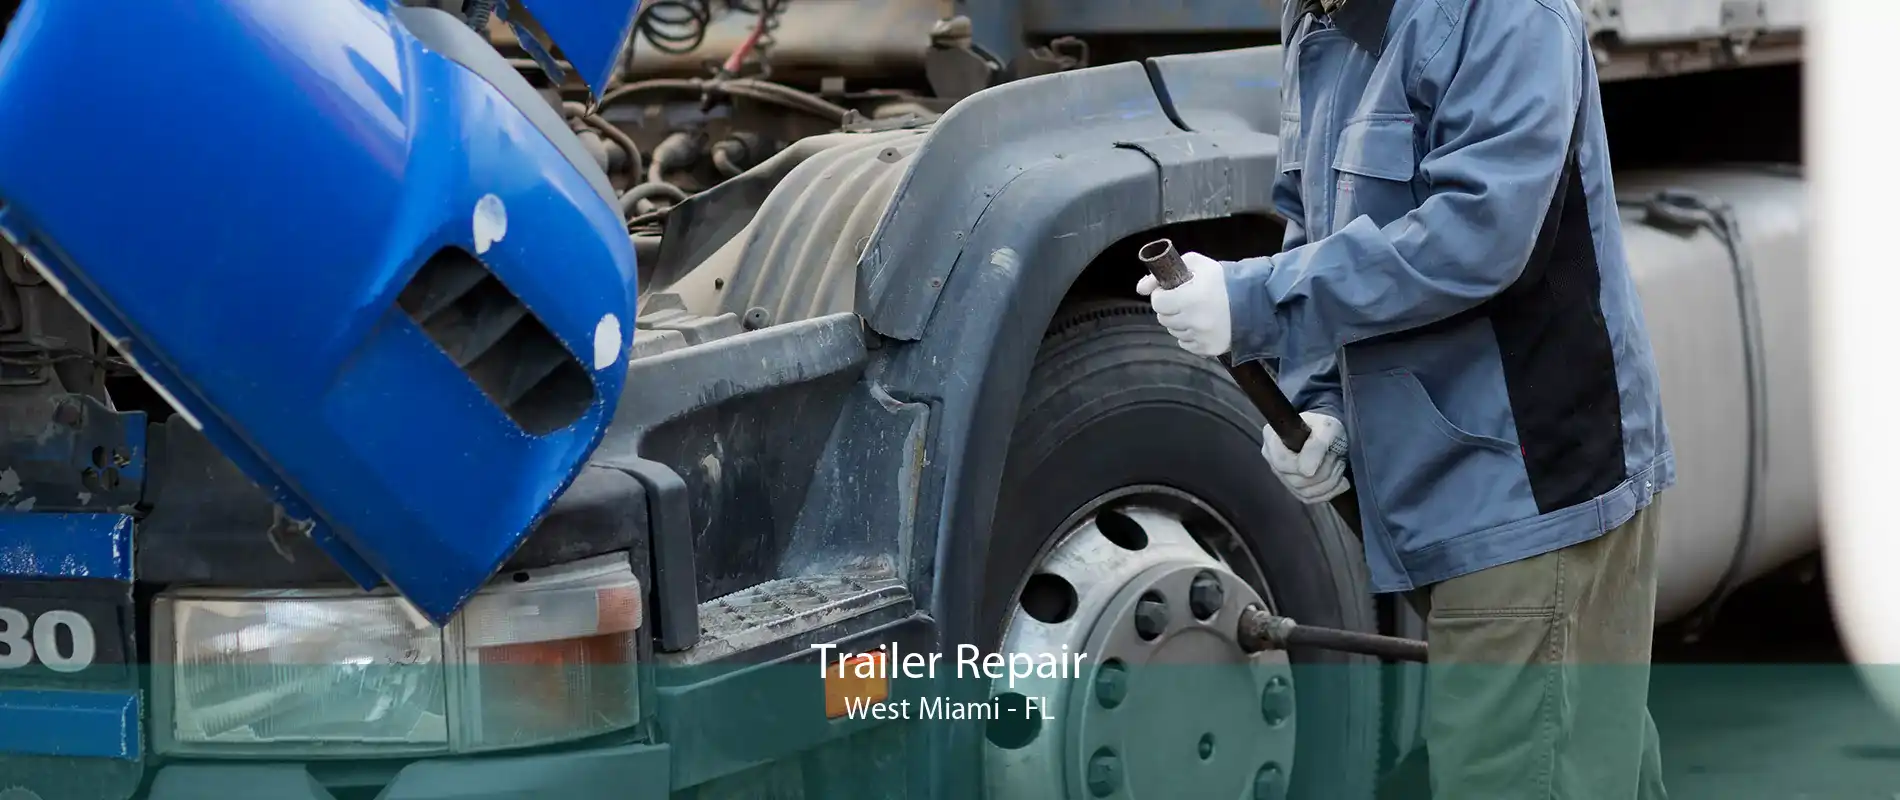 Trailer Repair West Miami - FL